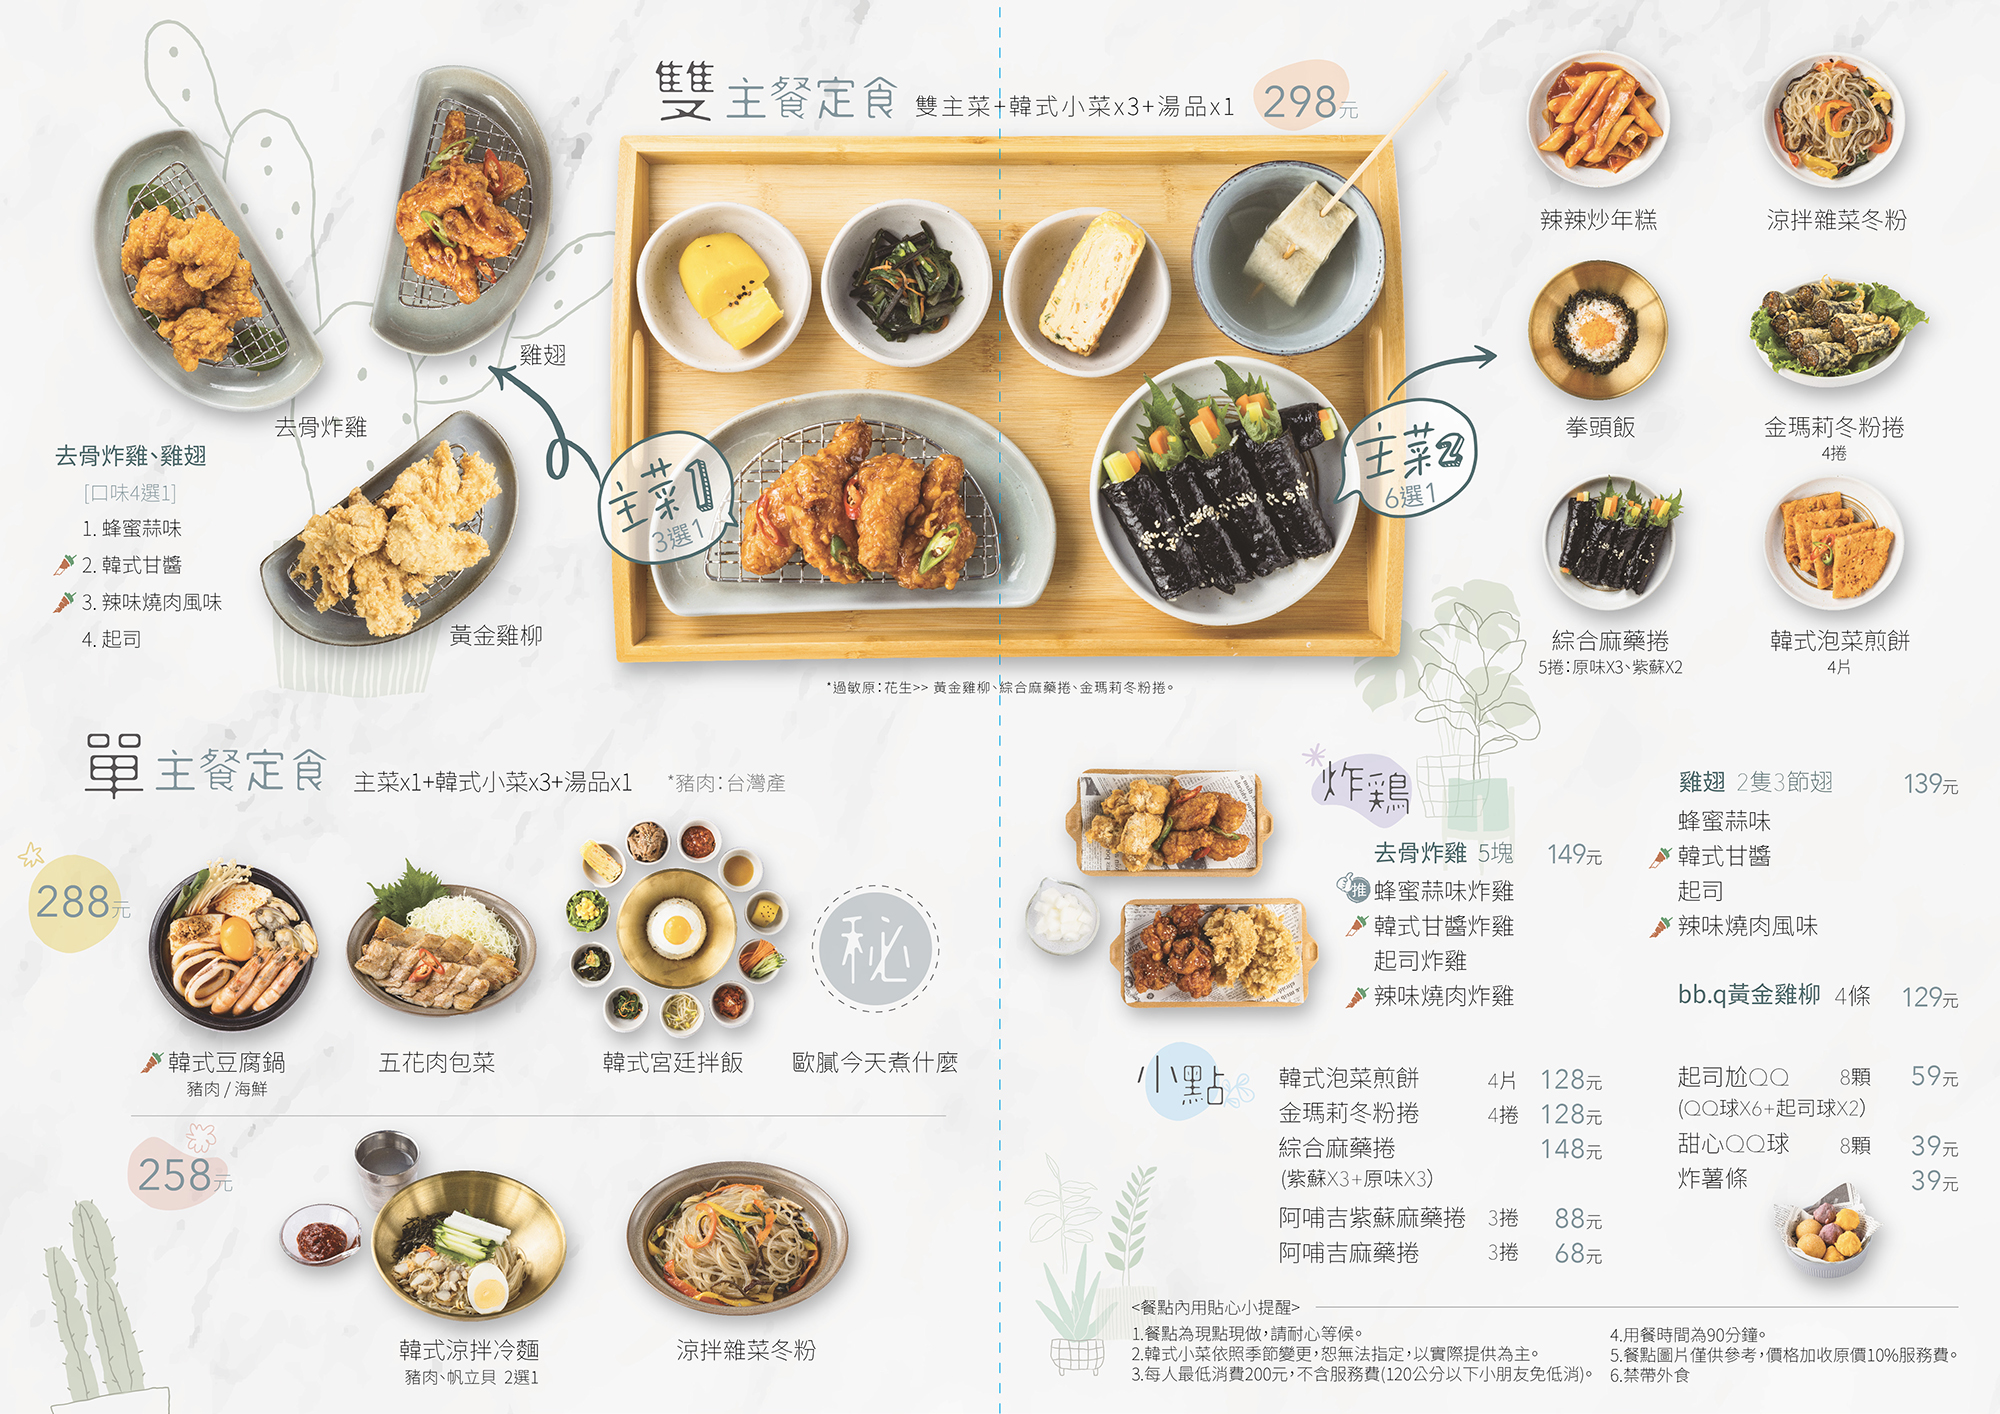 天母美食「bb.q CHICKEN 韓式料理店」完整菜單一覽表